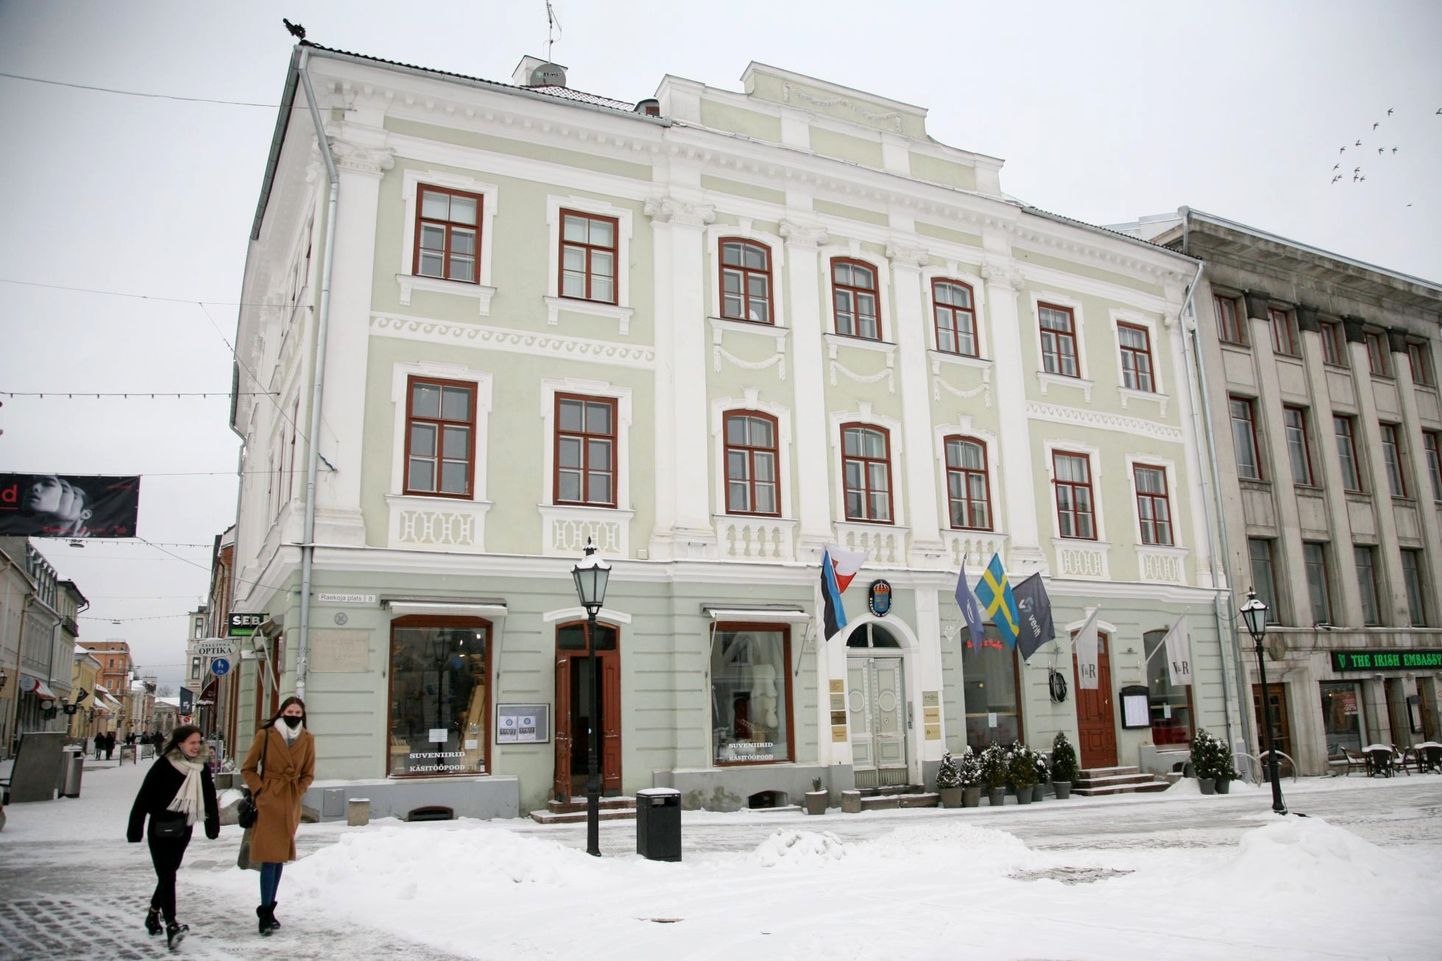 Raekoja plats 8 majas oli kunstnik Konrad Mäe viimane elukoht.